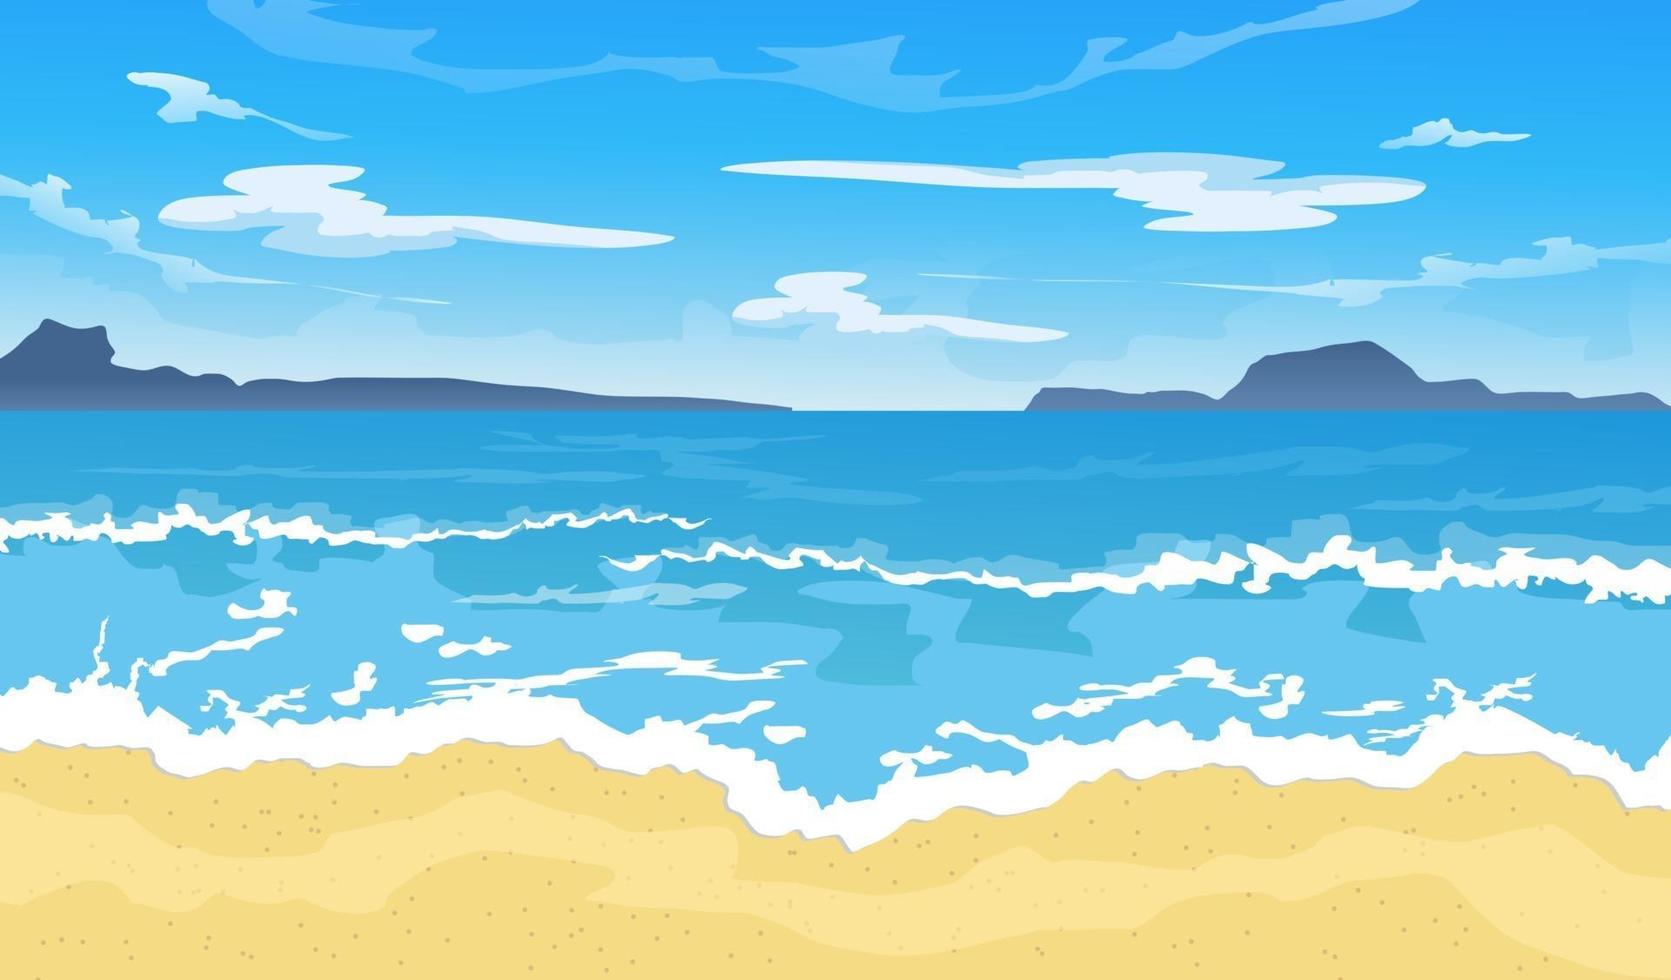 praia de verão. férias de natureza paradisíaca com fundo bonito do oceano ou do mar ilustração vetorial de paisagem à beira-mar vetor